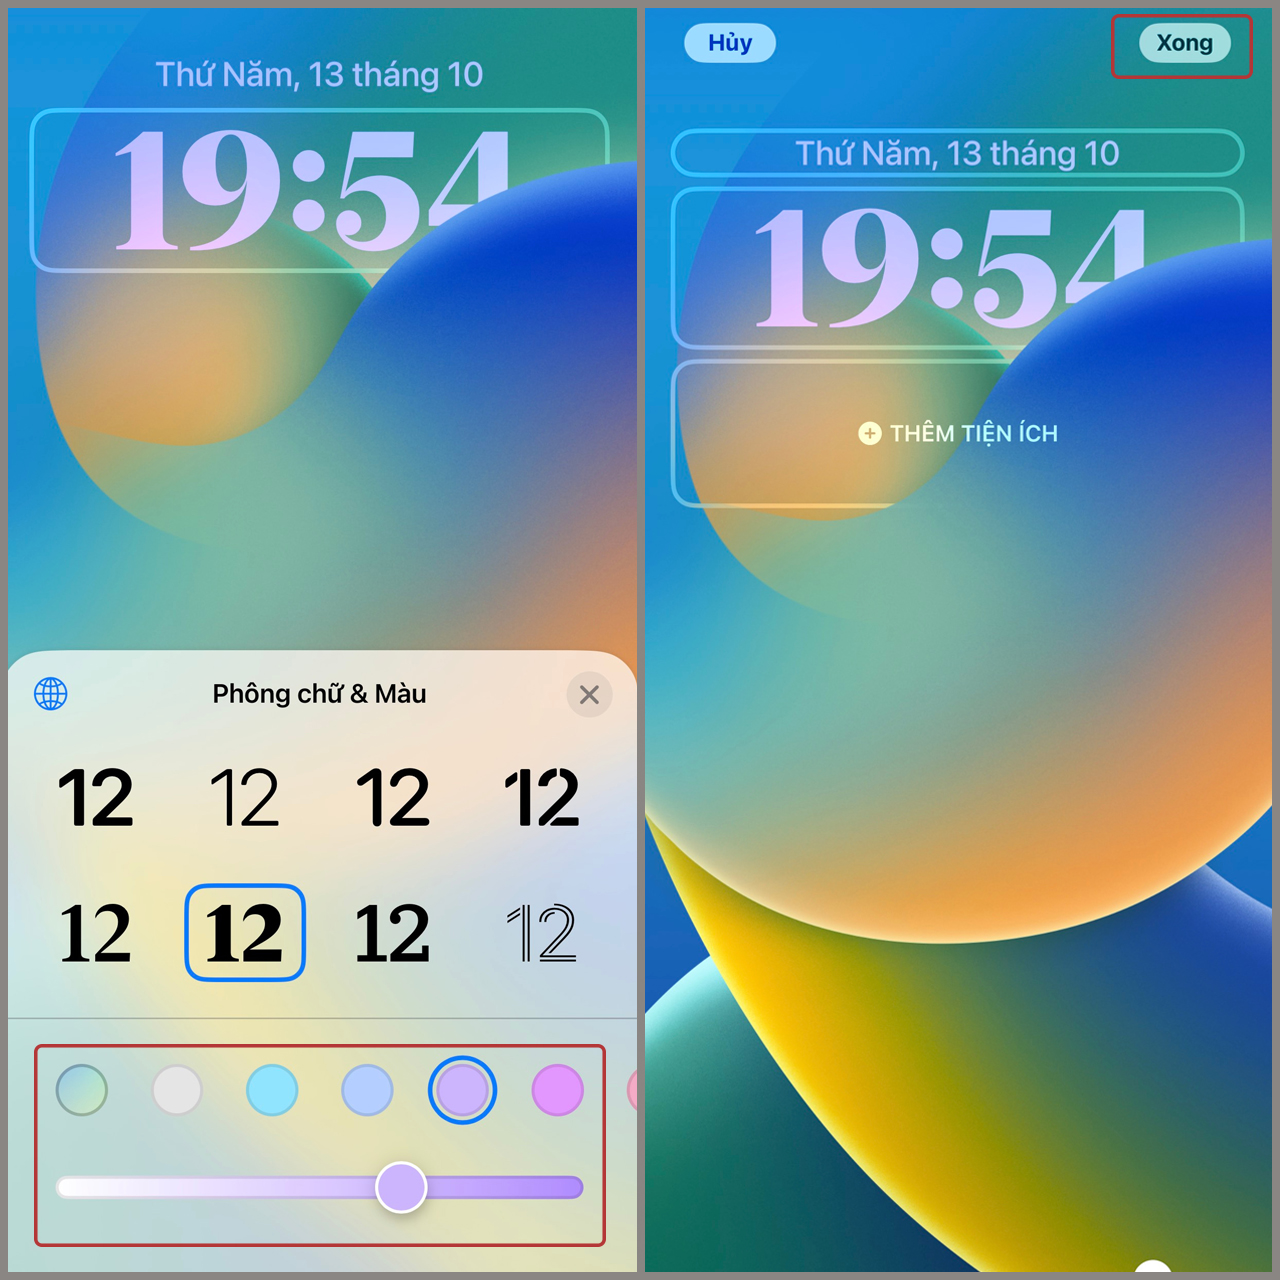 Với kiểu đồng hồ mới trên iOS 16, hiện tại bạn có thể tùy chỉnh thiết kế của mình cho phù hợp với cá tính và gu thẩm mỹ của mình. Kiểu đồng hồ trên iOS 16 thực sự rất độc đáo và thu hút, cùng chiêm ngưỡng những mẫu đồng hồ mới và thử ngay nhé!